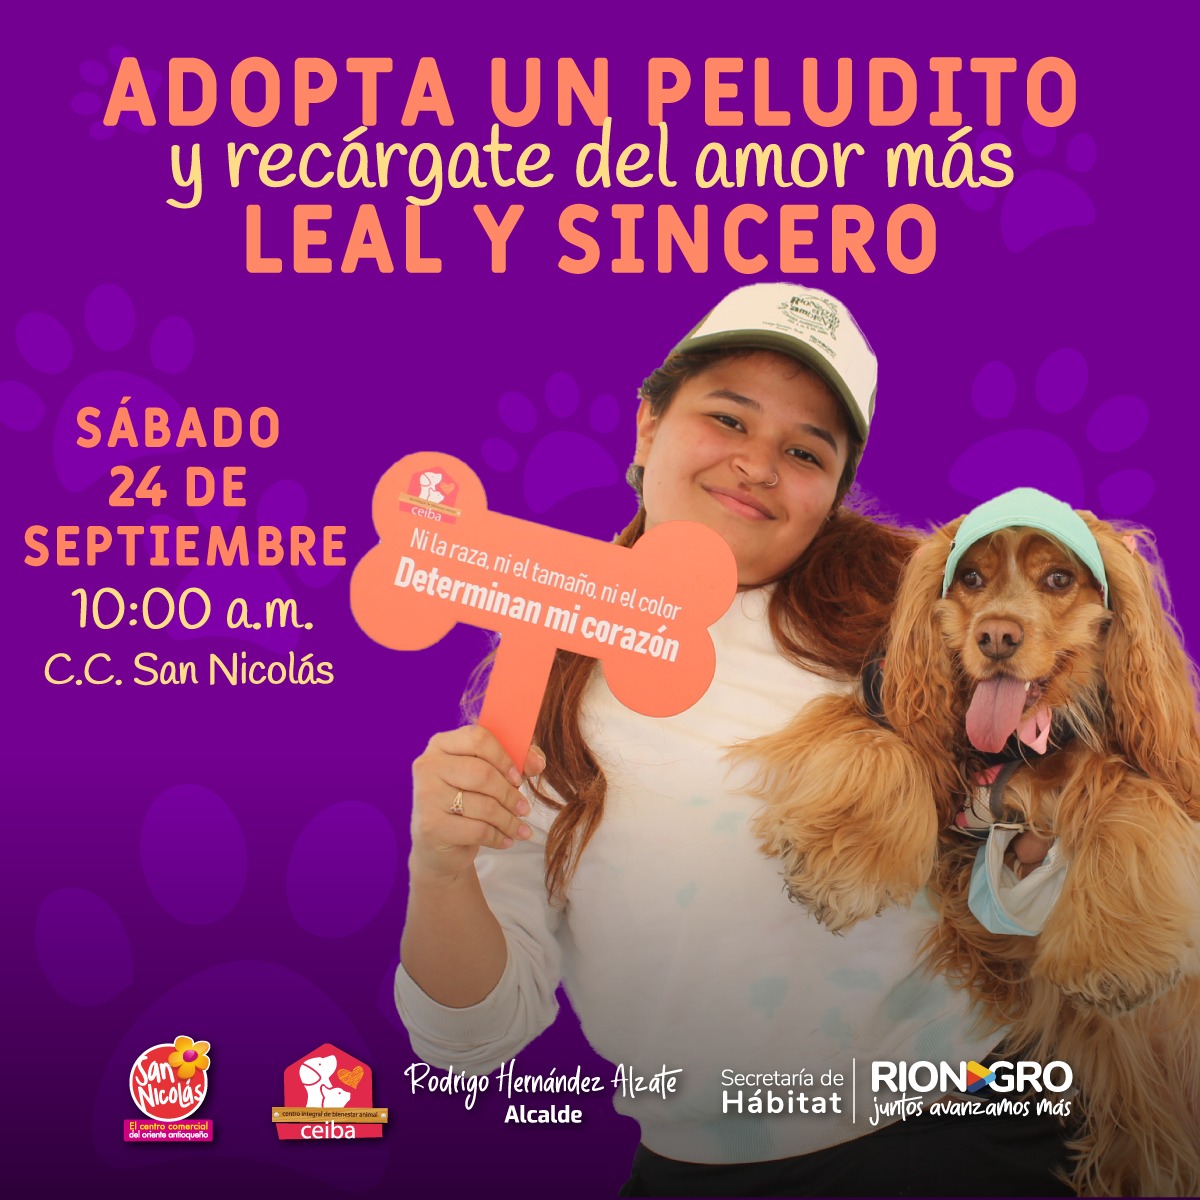 En Rionegro se promueve la adopción responsable de peluditos - Alcaldía de  Rionegro